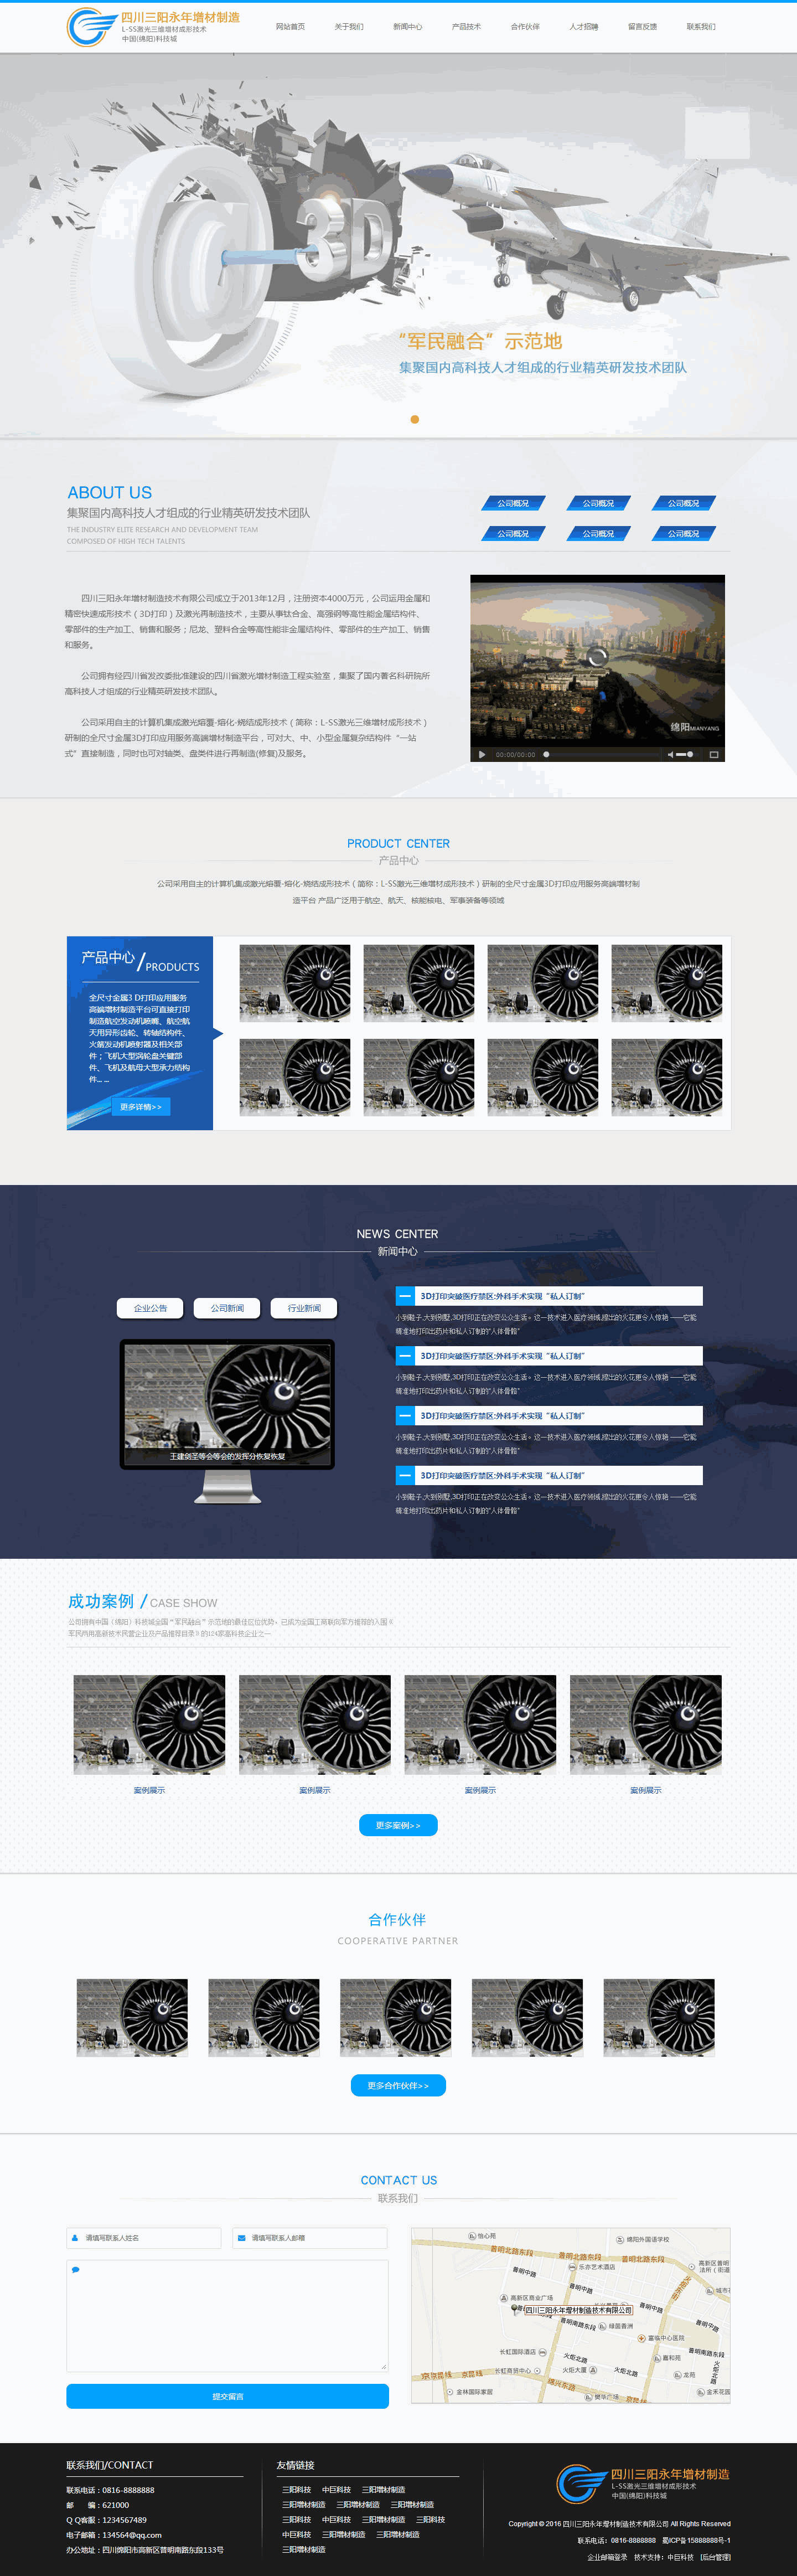 蓝色简洁大气3d打印公司网站主题模板下载演示图